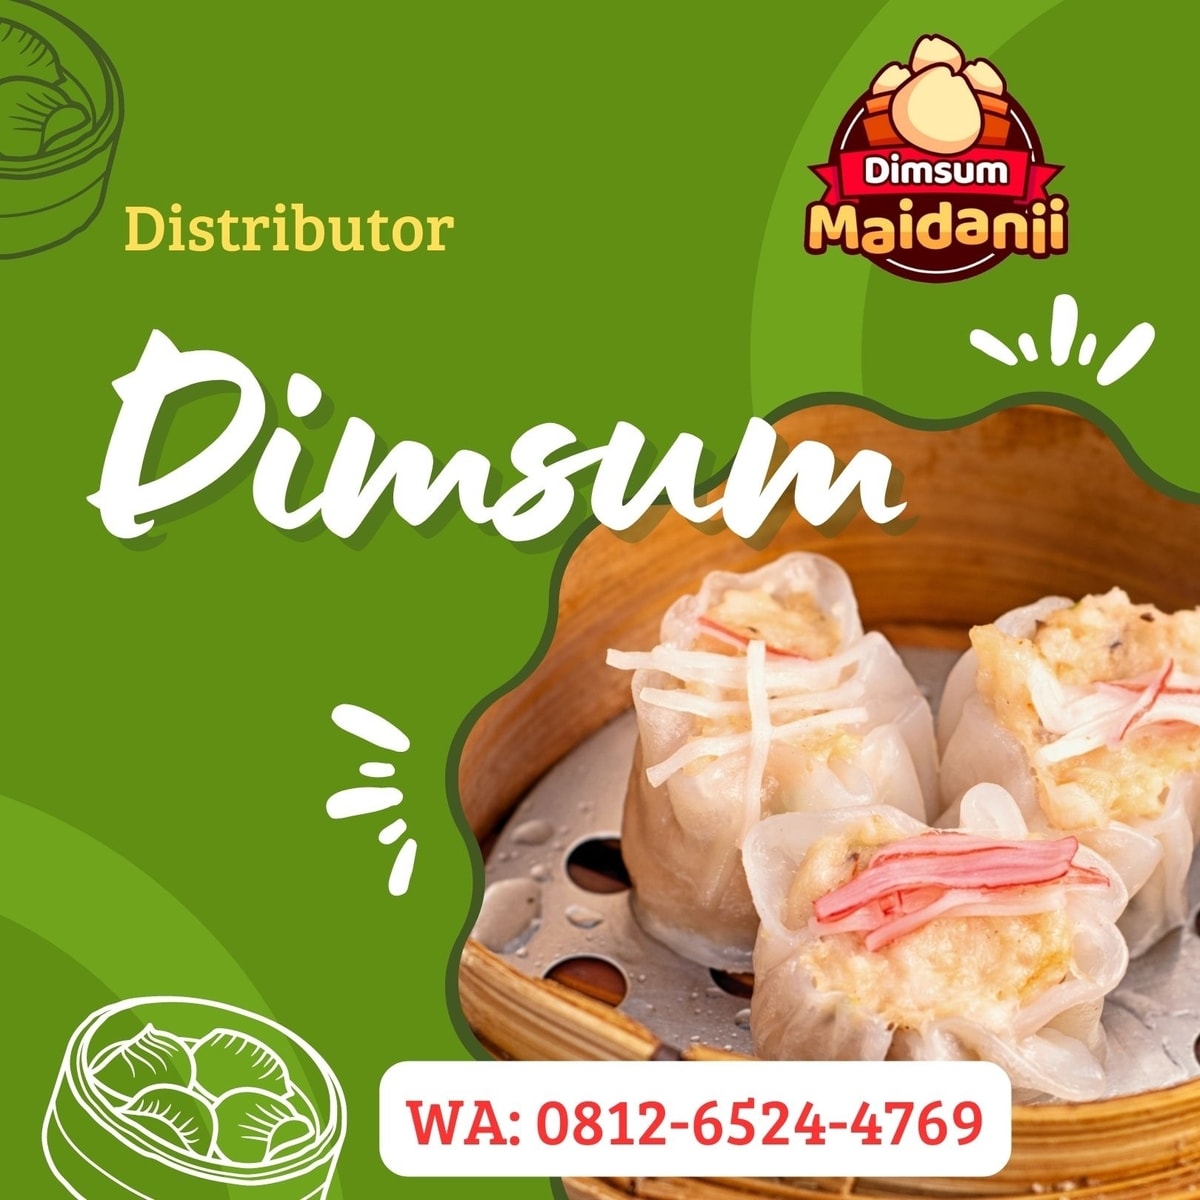 Distributor Dimsum Frozen di Medan, WA: 0812-6524-4769, OPEN RESELLER